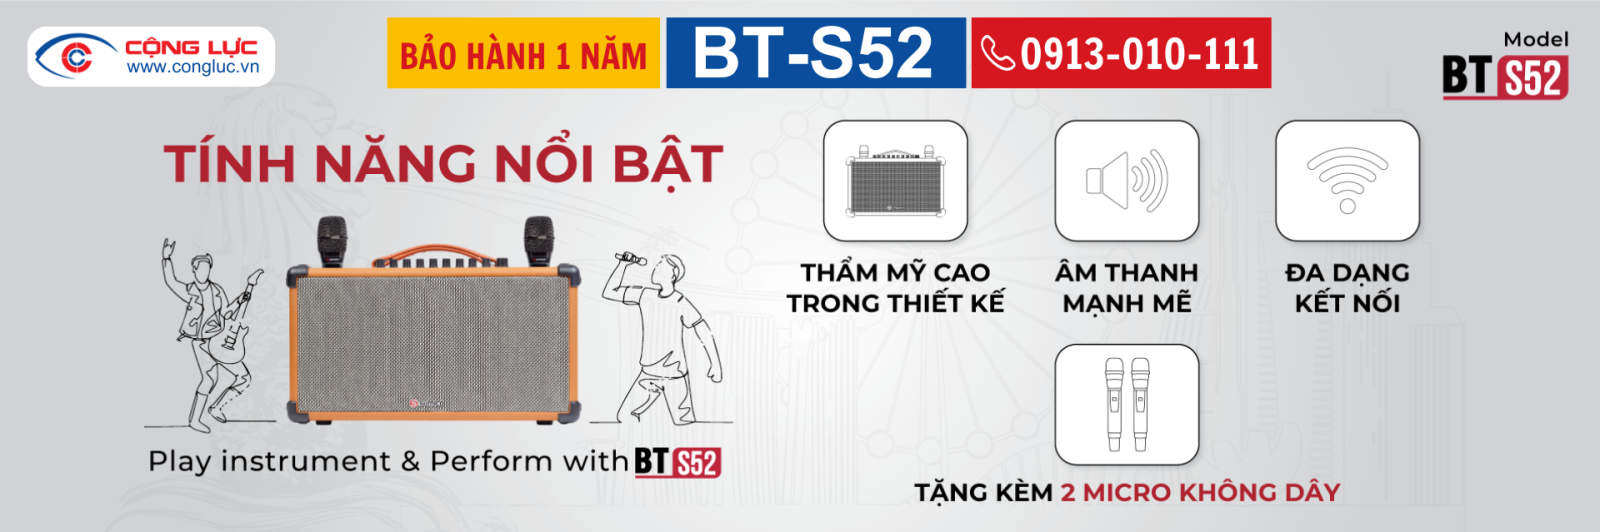 Bán loa karaoke di động sumico BT-S52 chính hãng giá rẻ nhất tại Hải Phòng 6